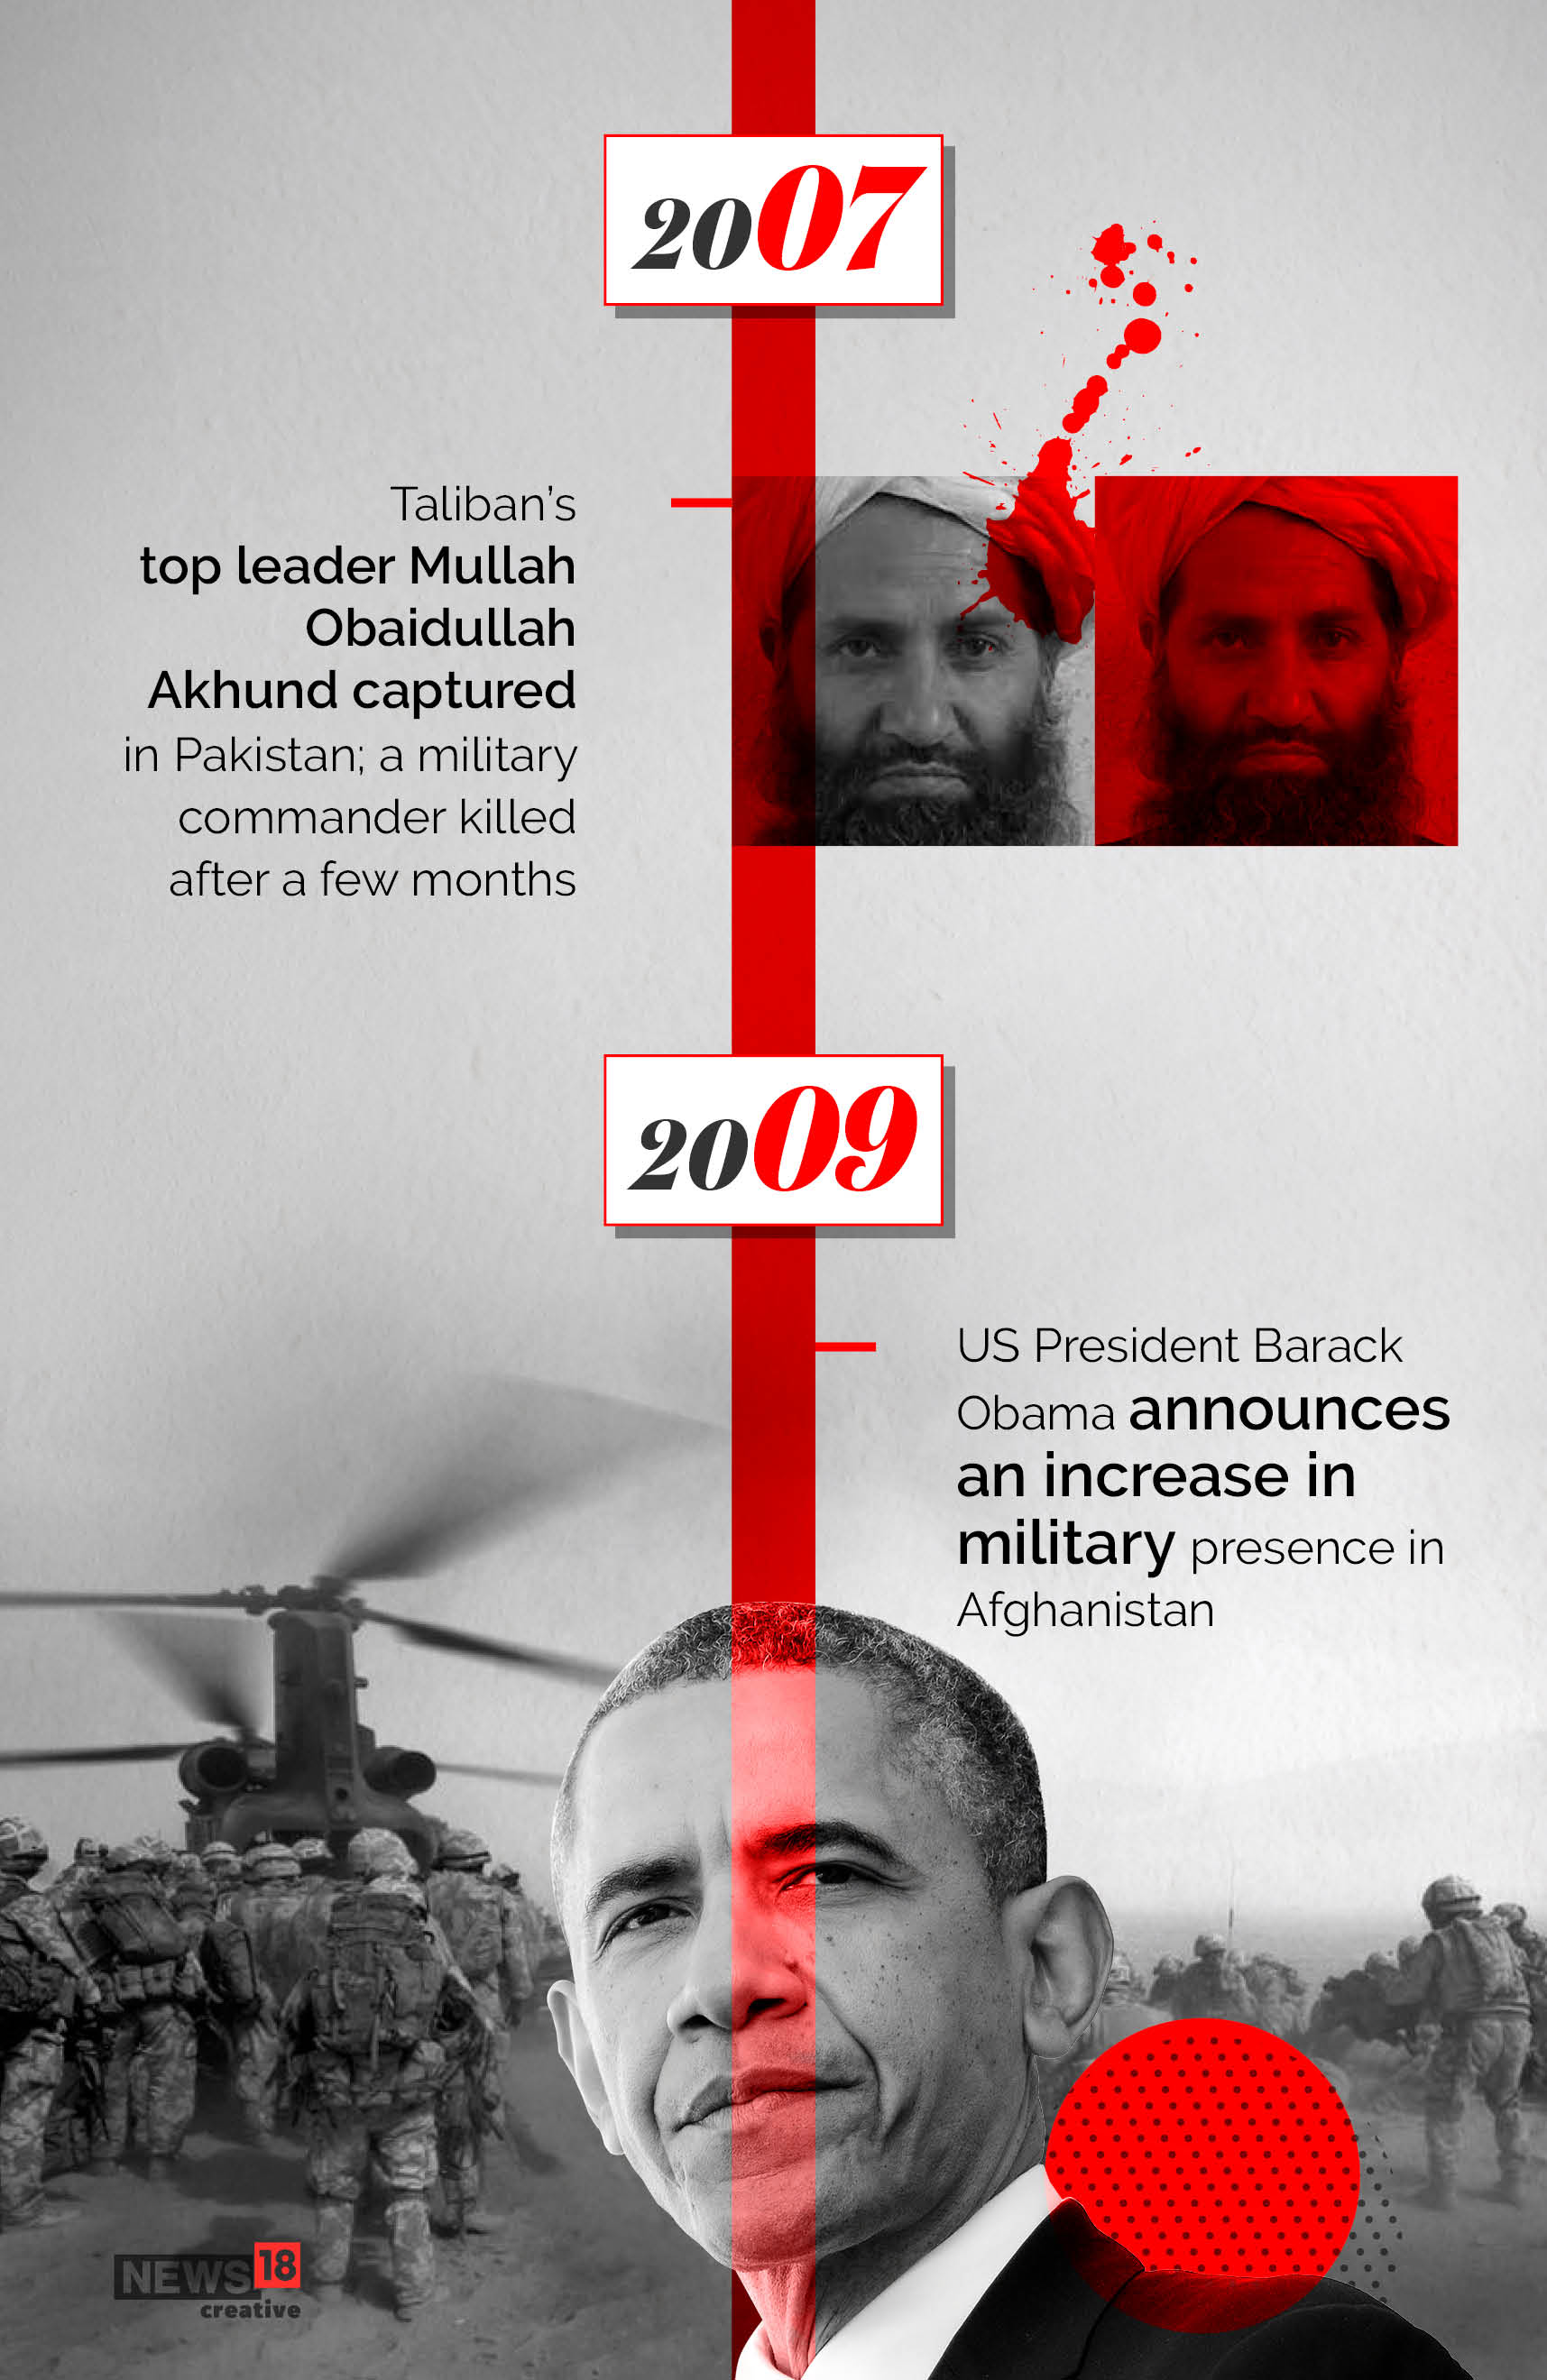 Timeline: America's longest war ends as US leaves Afghanistan